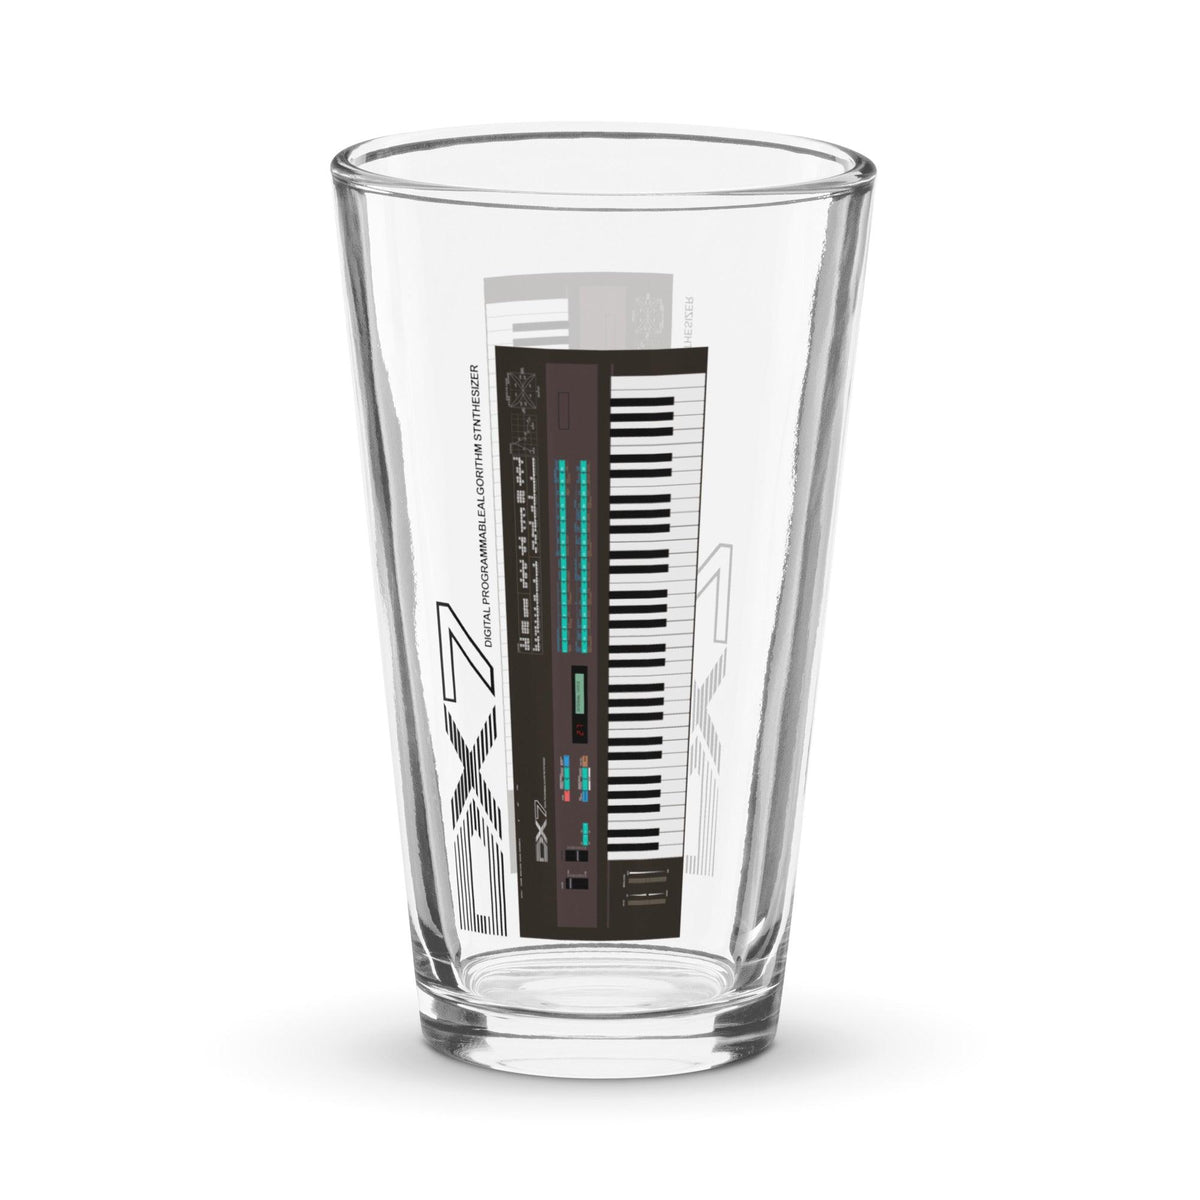 Yamaha DX7 Keyboard Artist Rendition Shaker Pint Glass (16 oz.) - Tedeschi Studio, LLC.